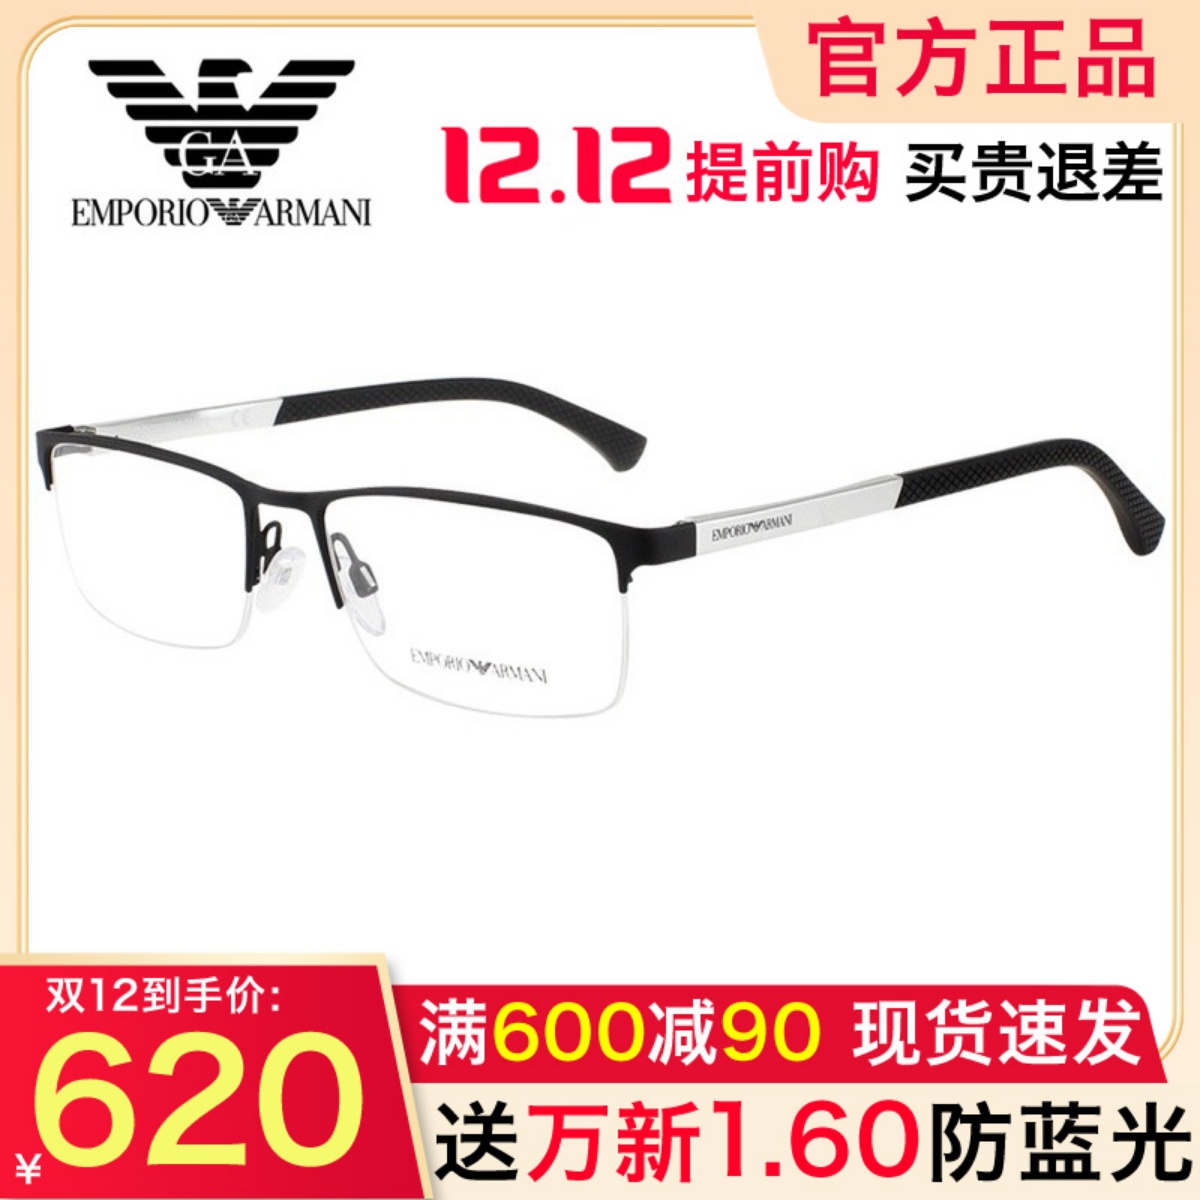 Armani阿玛尼发布由中国演员胡歌主演的Giorgio Armani 2022秋冬眼镜系列广告大片。 - 华丽通